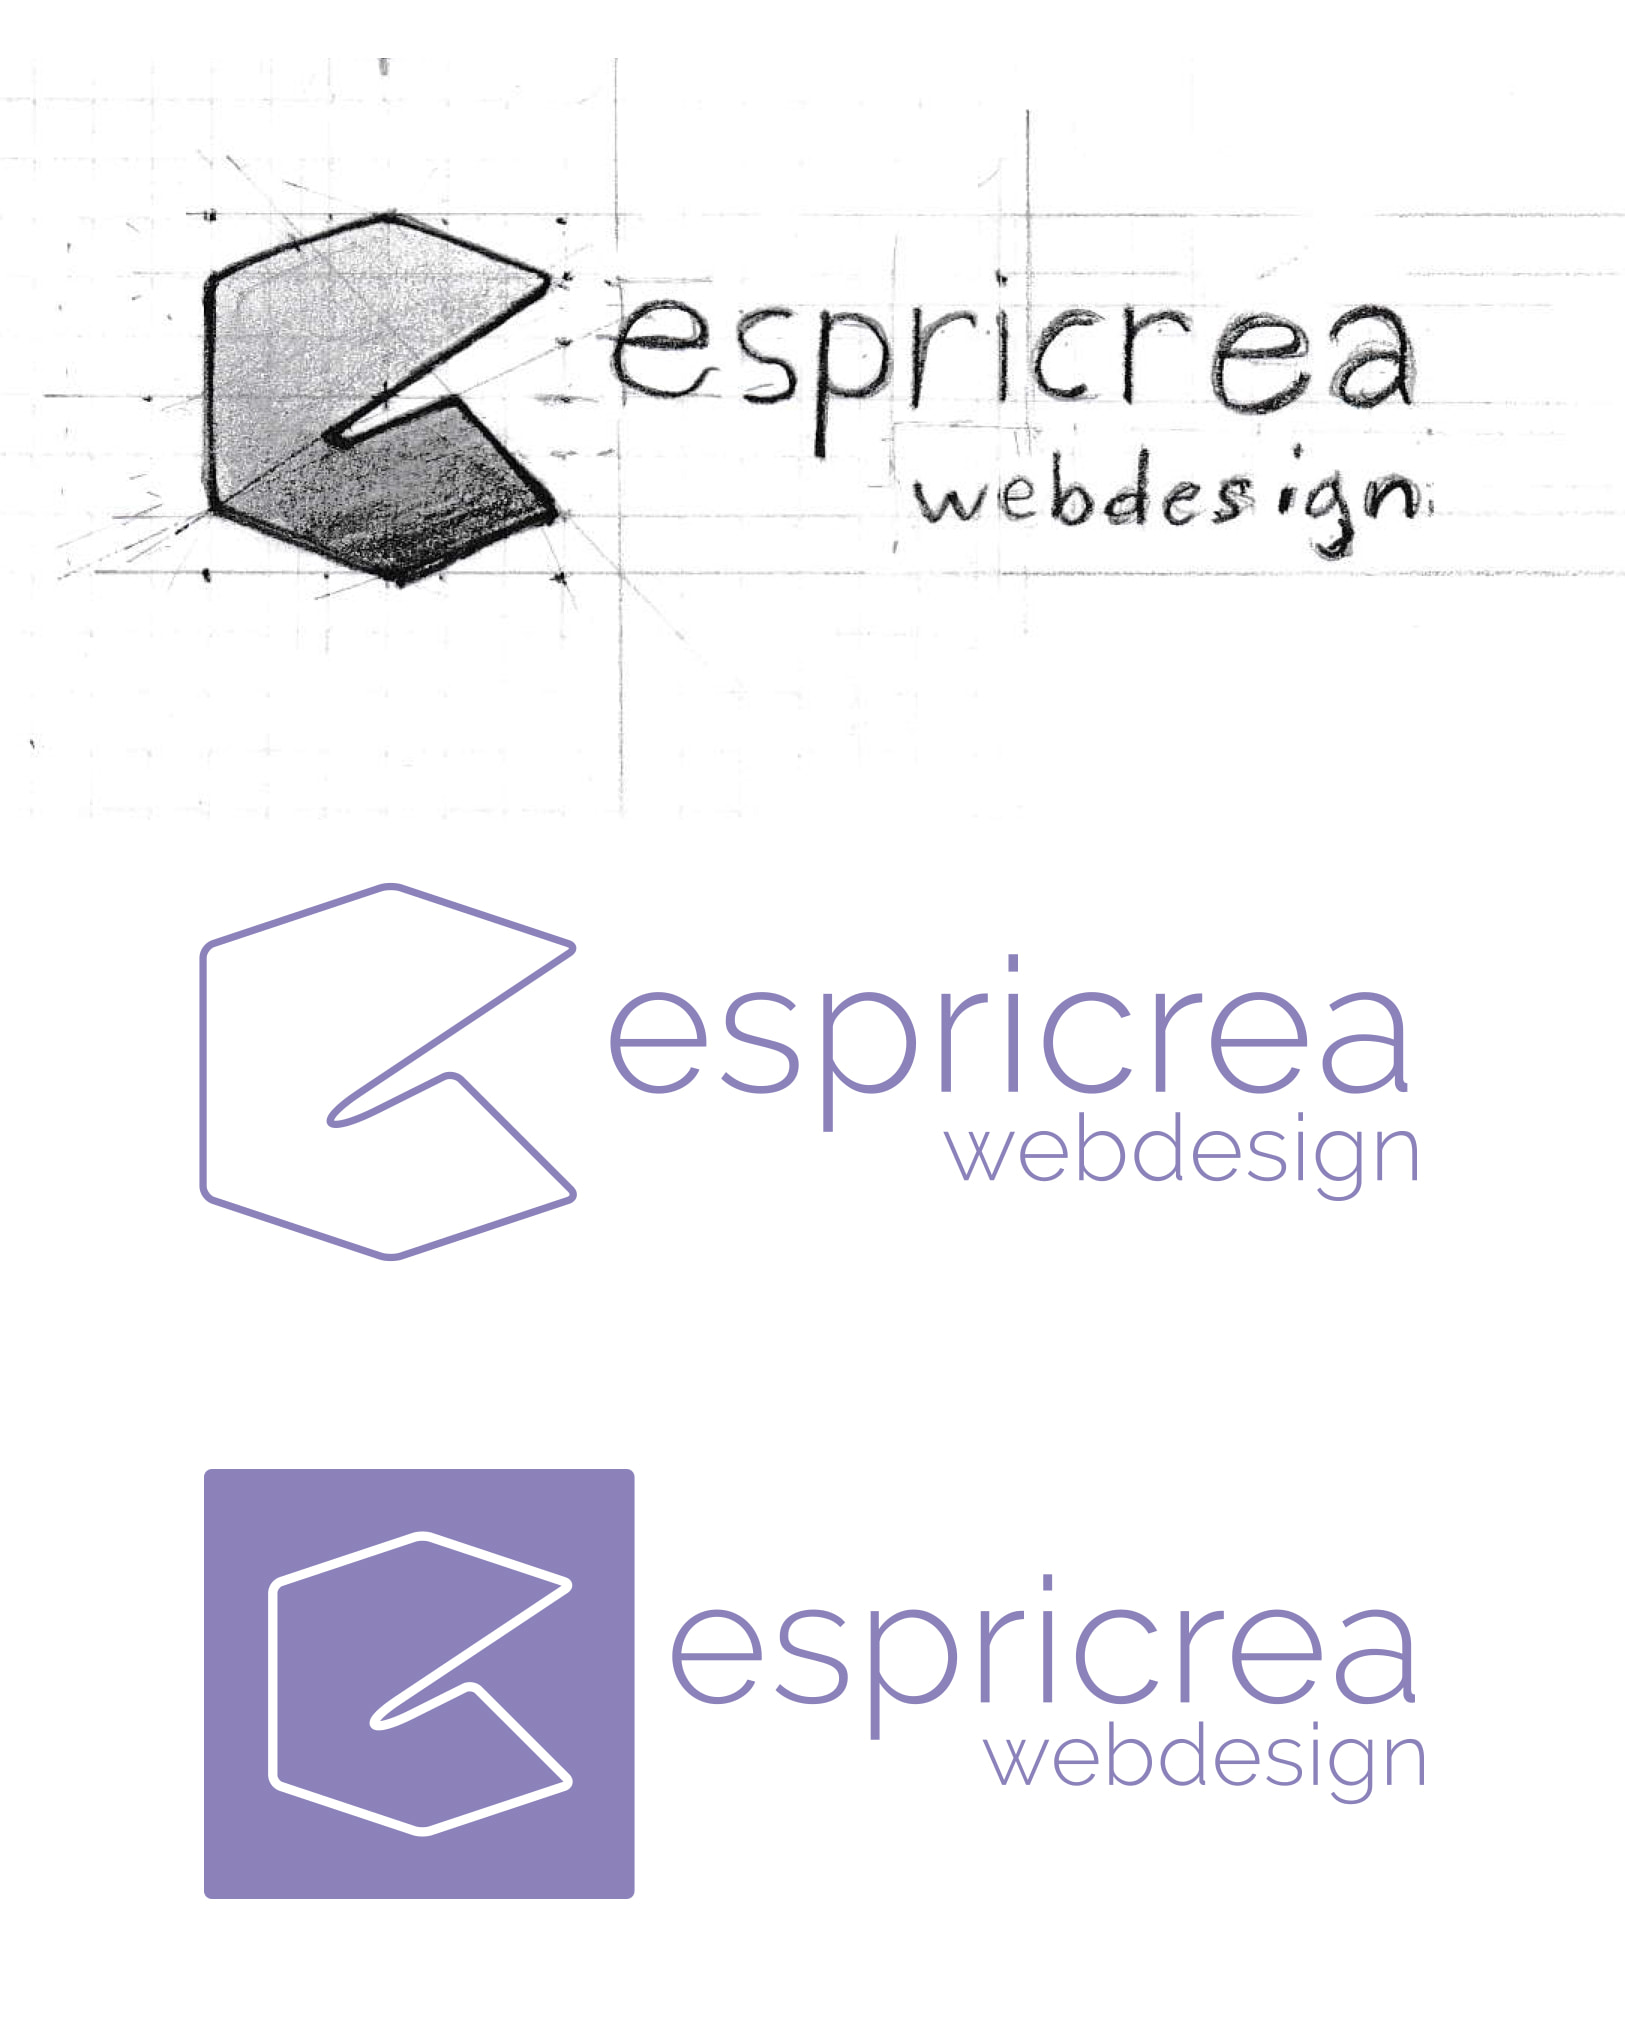 Création du logo espricréa